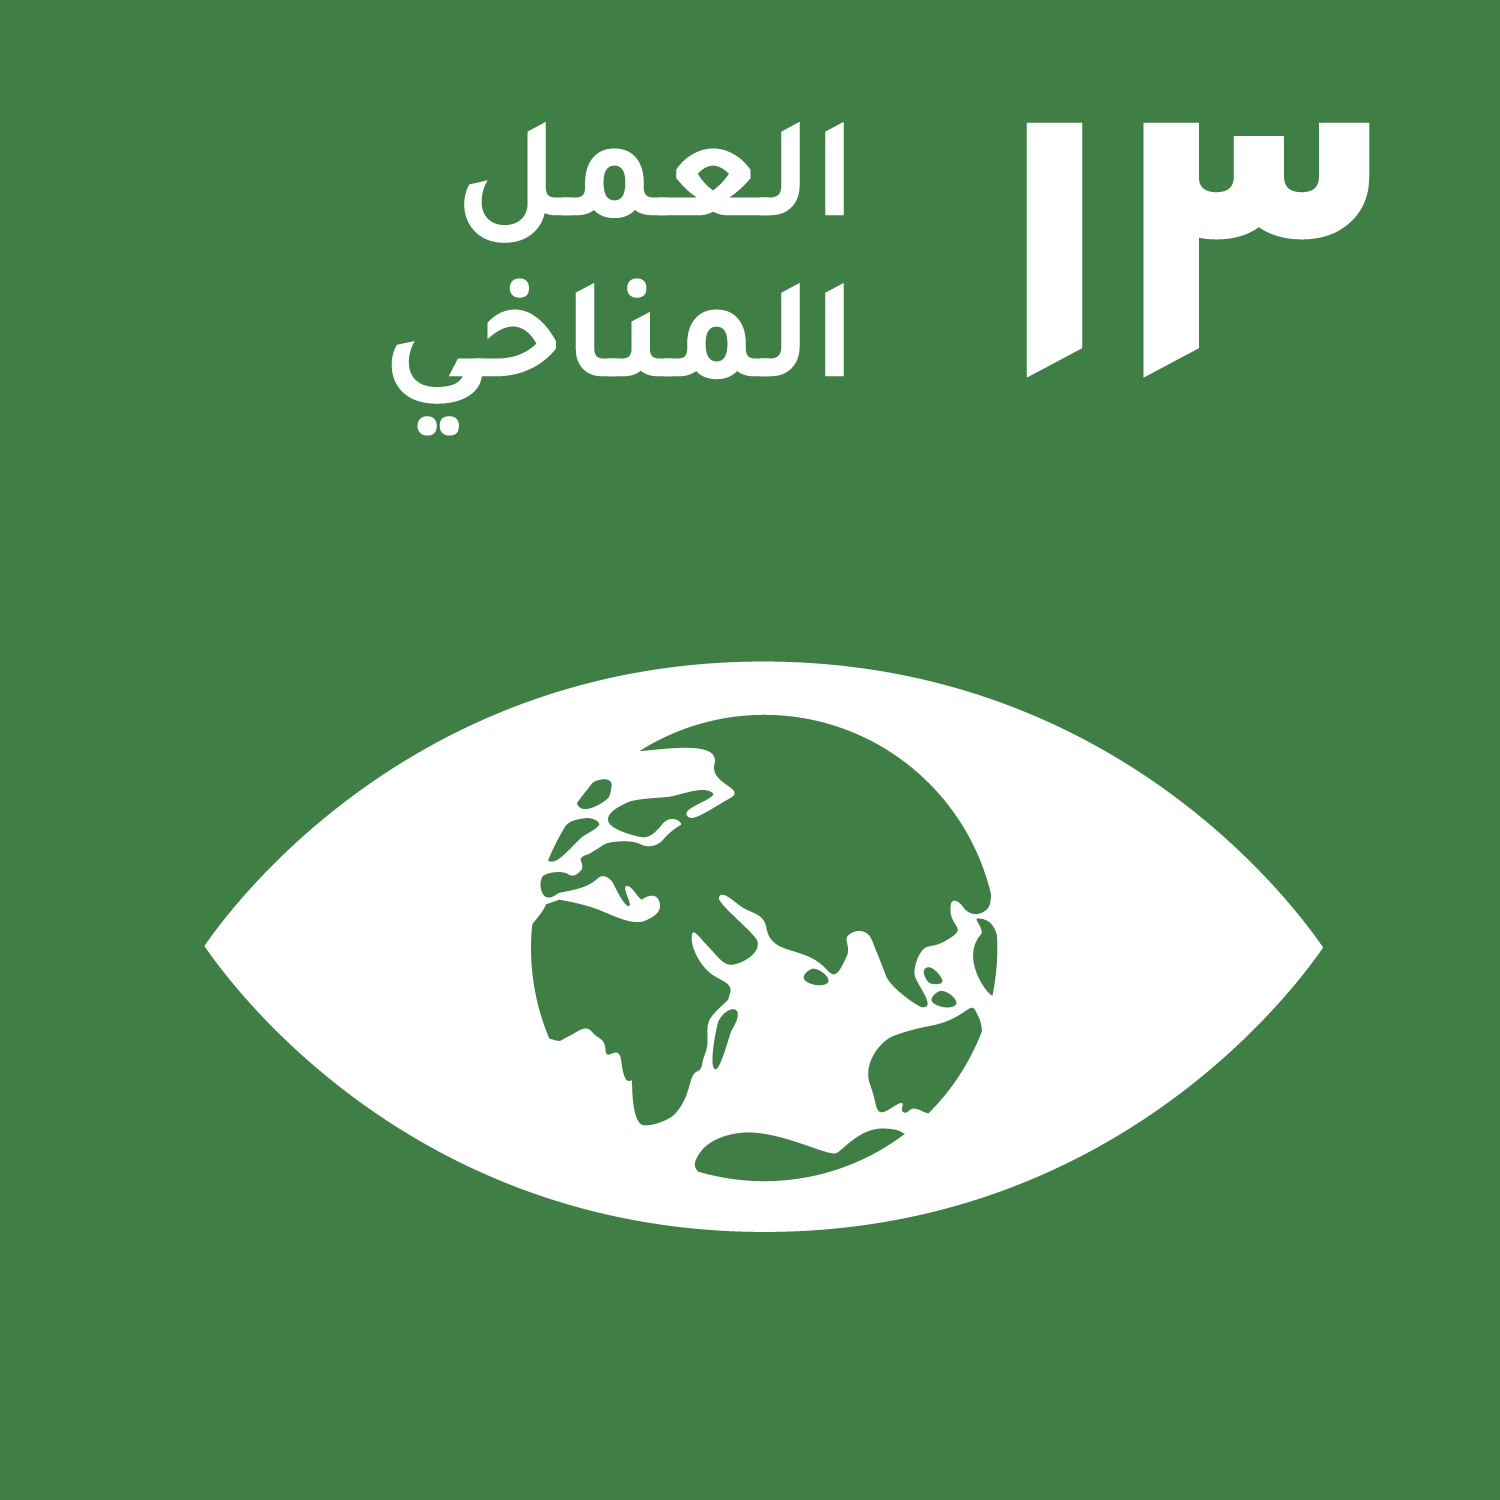 goal logo